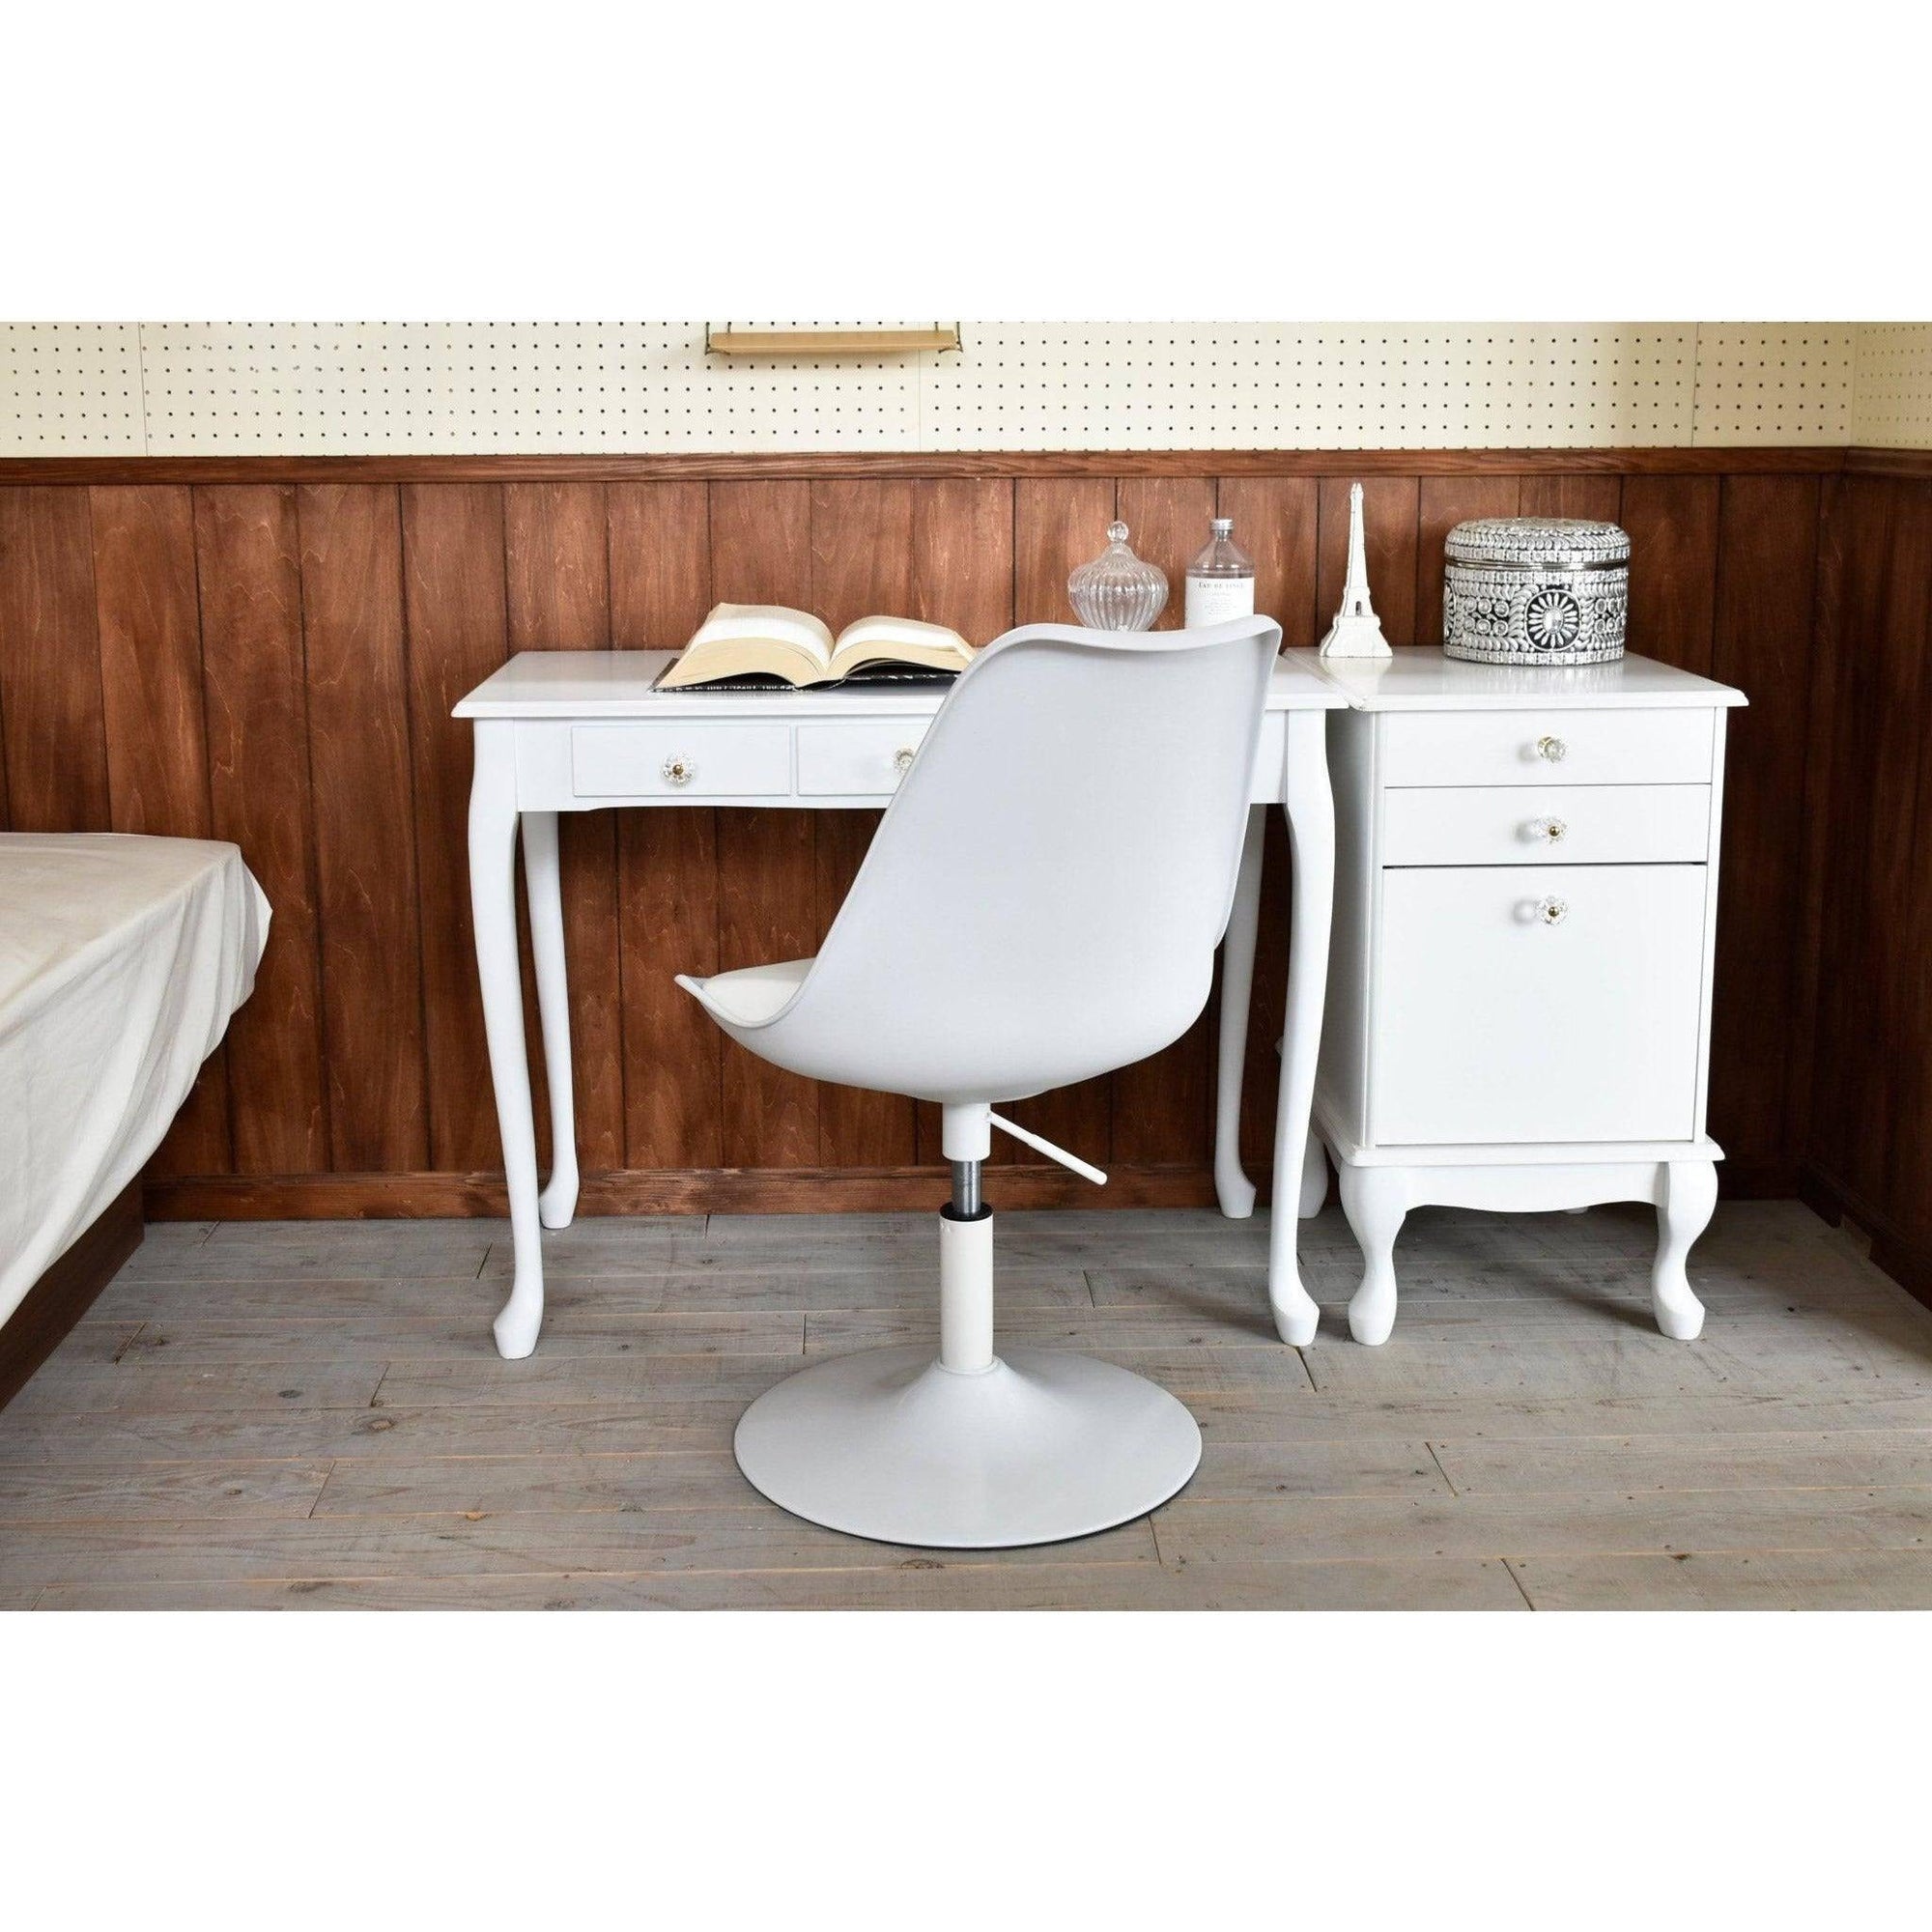 ラウンジチェアDesign chair VanillaGART ガルトkaguaroo